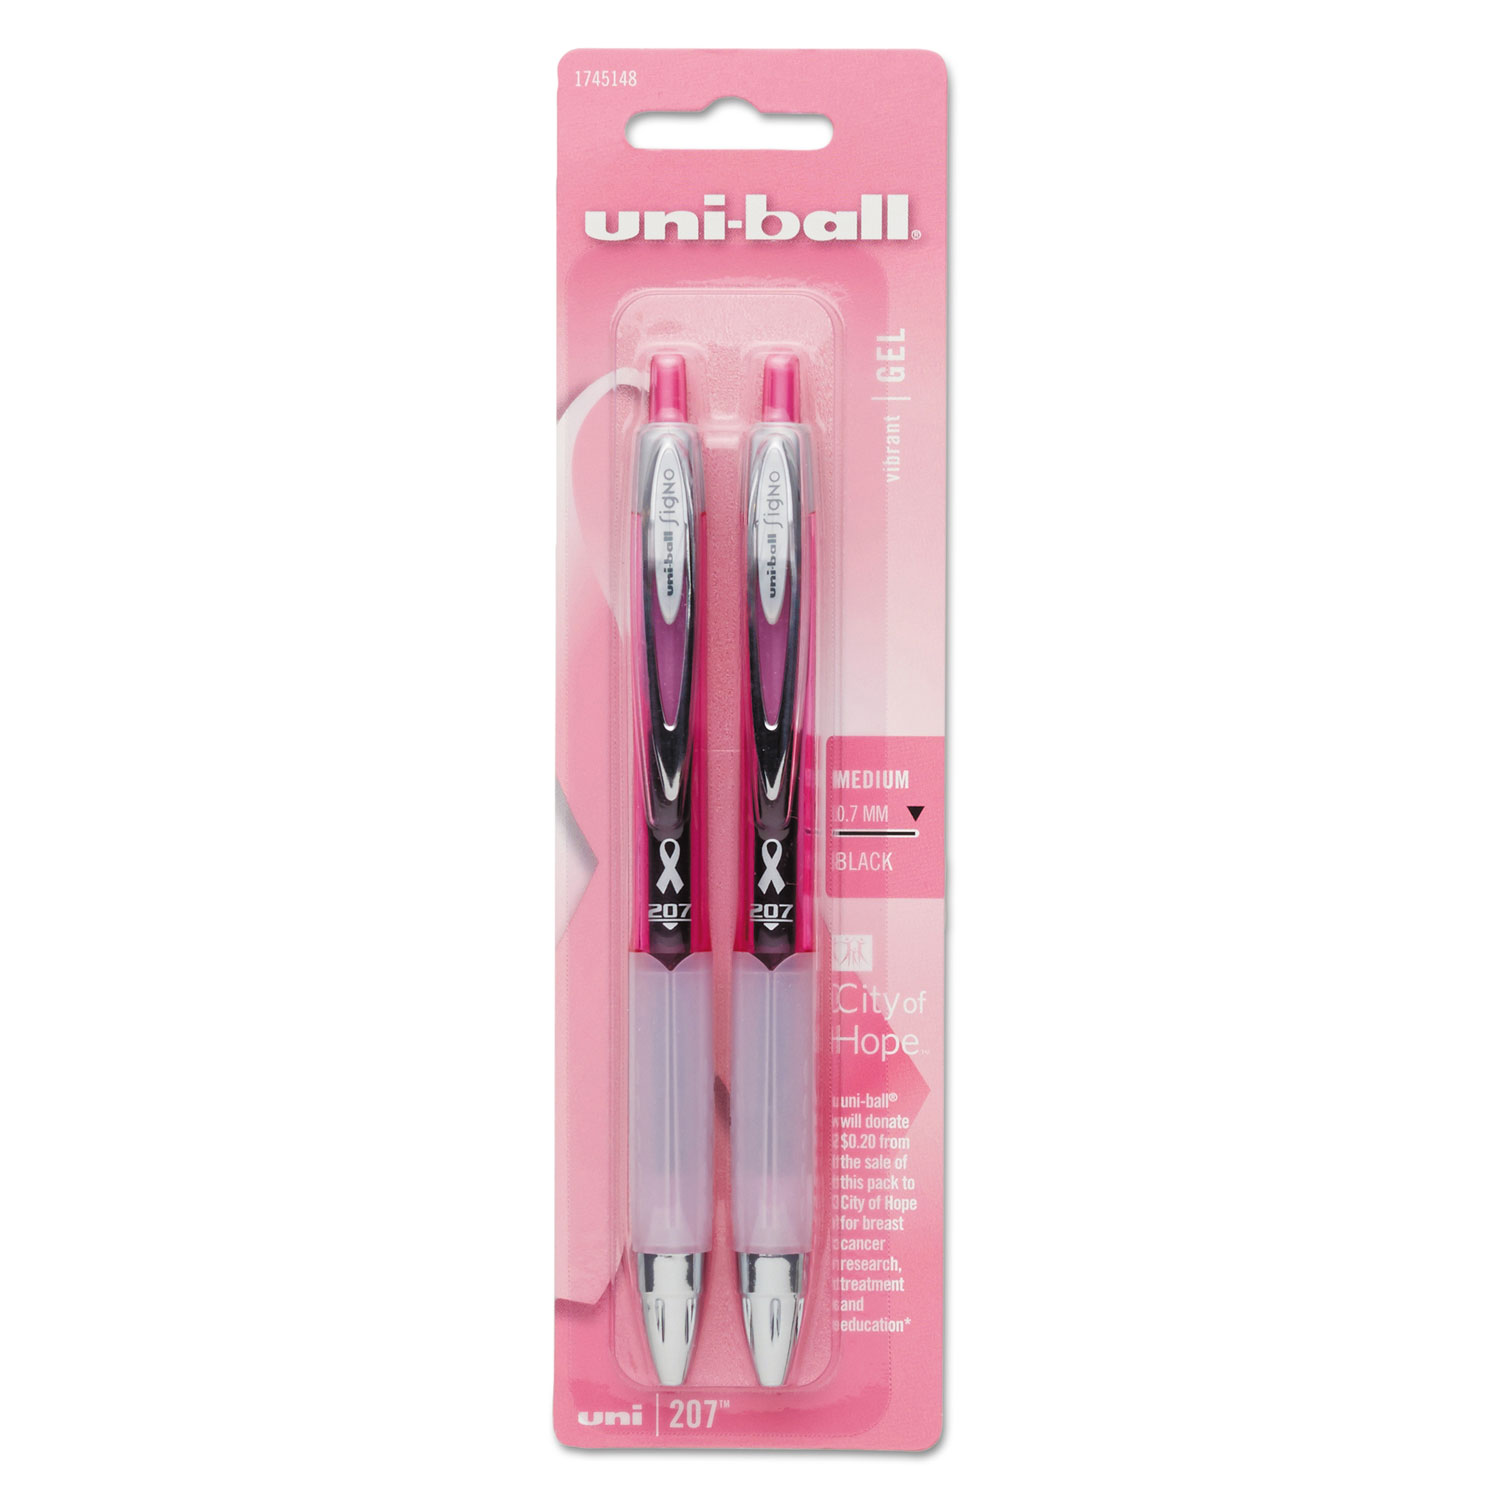  uni-ball 1745148 Signo 207 Retractable Gel Pen, Medium 0.7mm, Black Ink, Pink Barrel, 2/Pack (UBC1745148) 